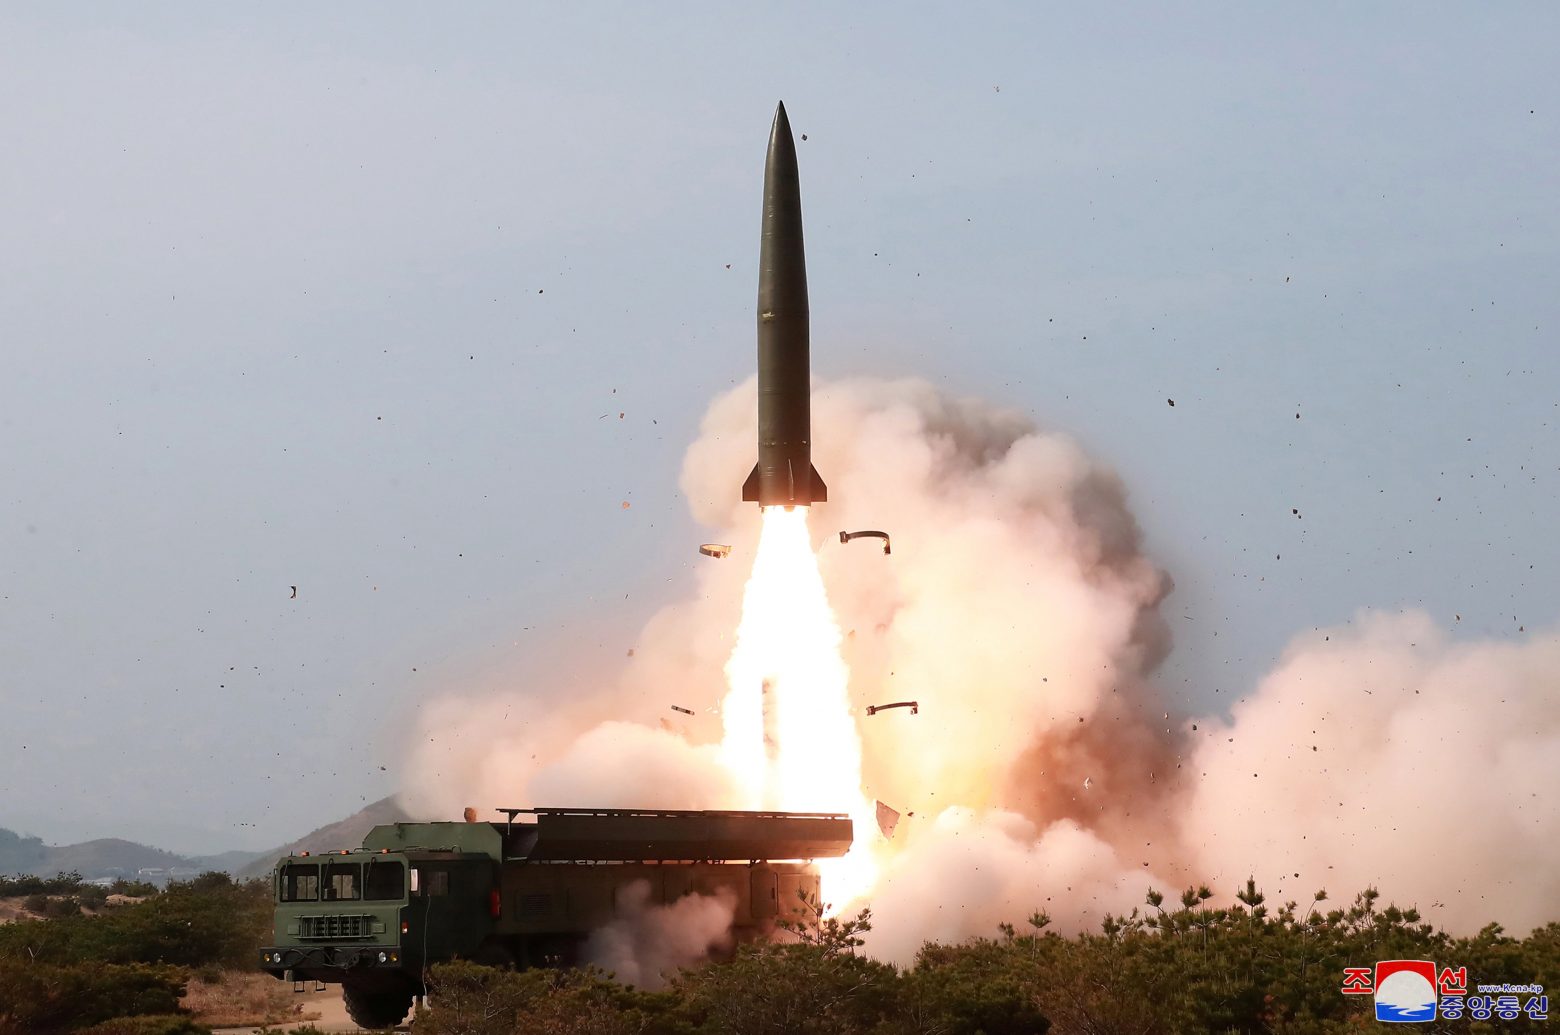 Βόρεια Κορέα: Εκτόξευσε διηπειρωτικό βαλλιστικό πύραυλο - Η πέμπτη δοκιμή σε δέκα μέρες